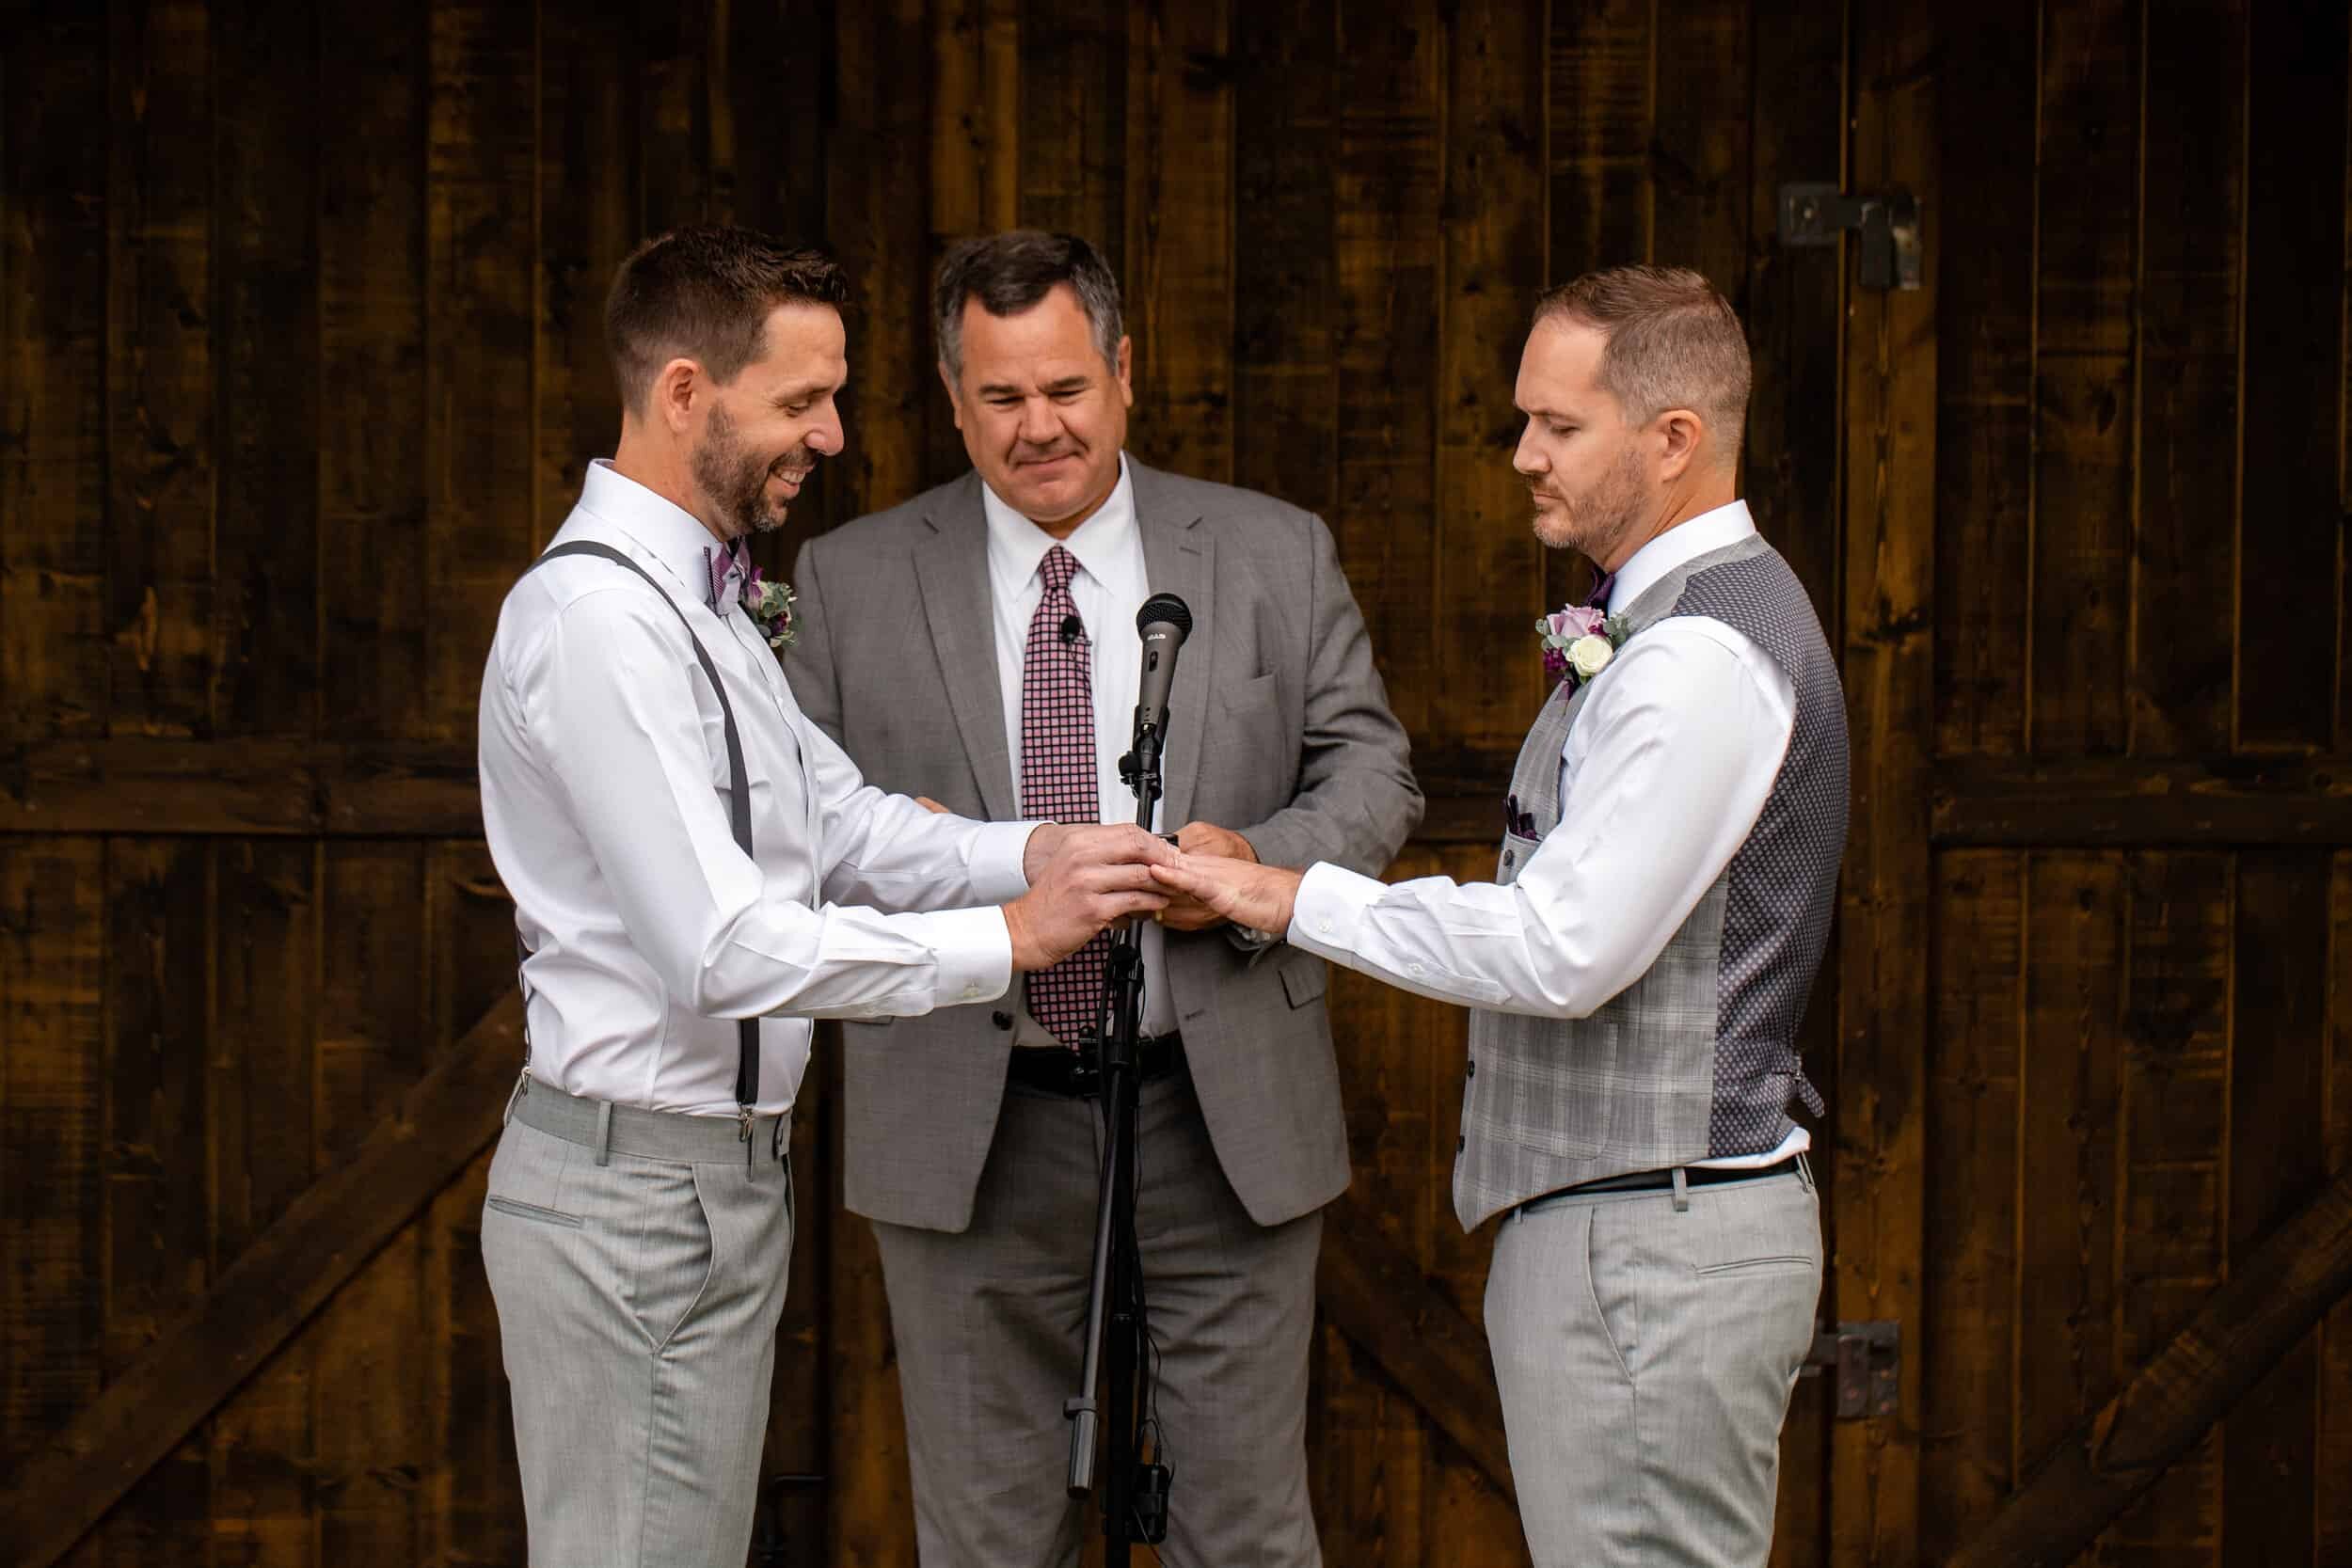 Two grooms exchange rings during their Destination Wedding in Utah